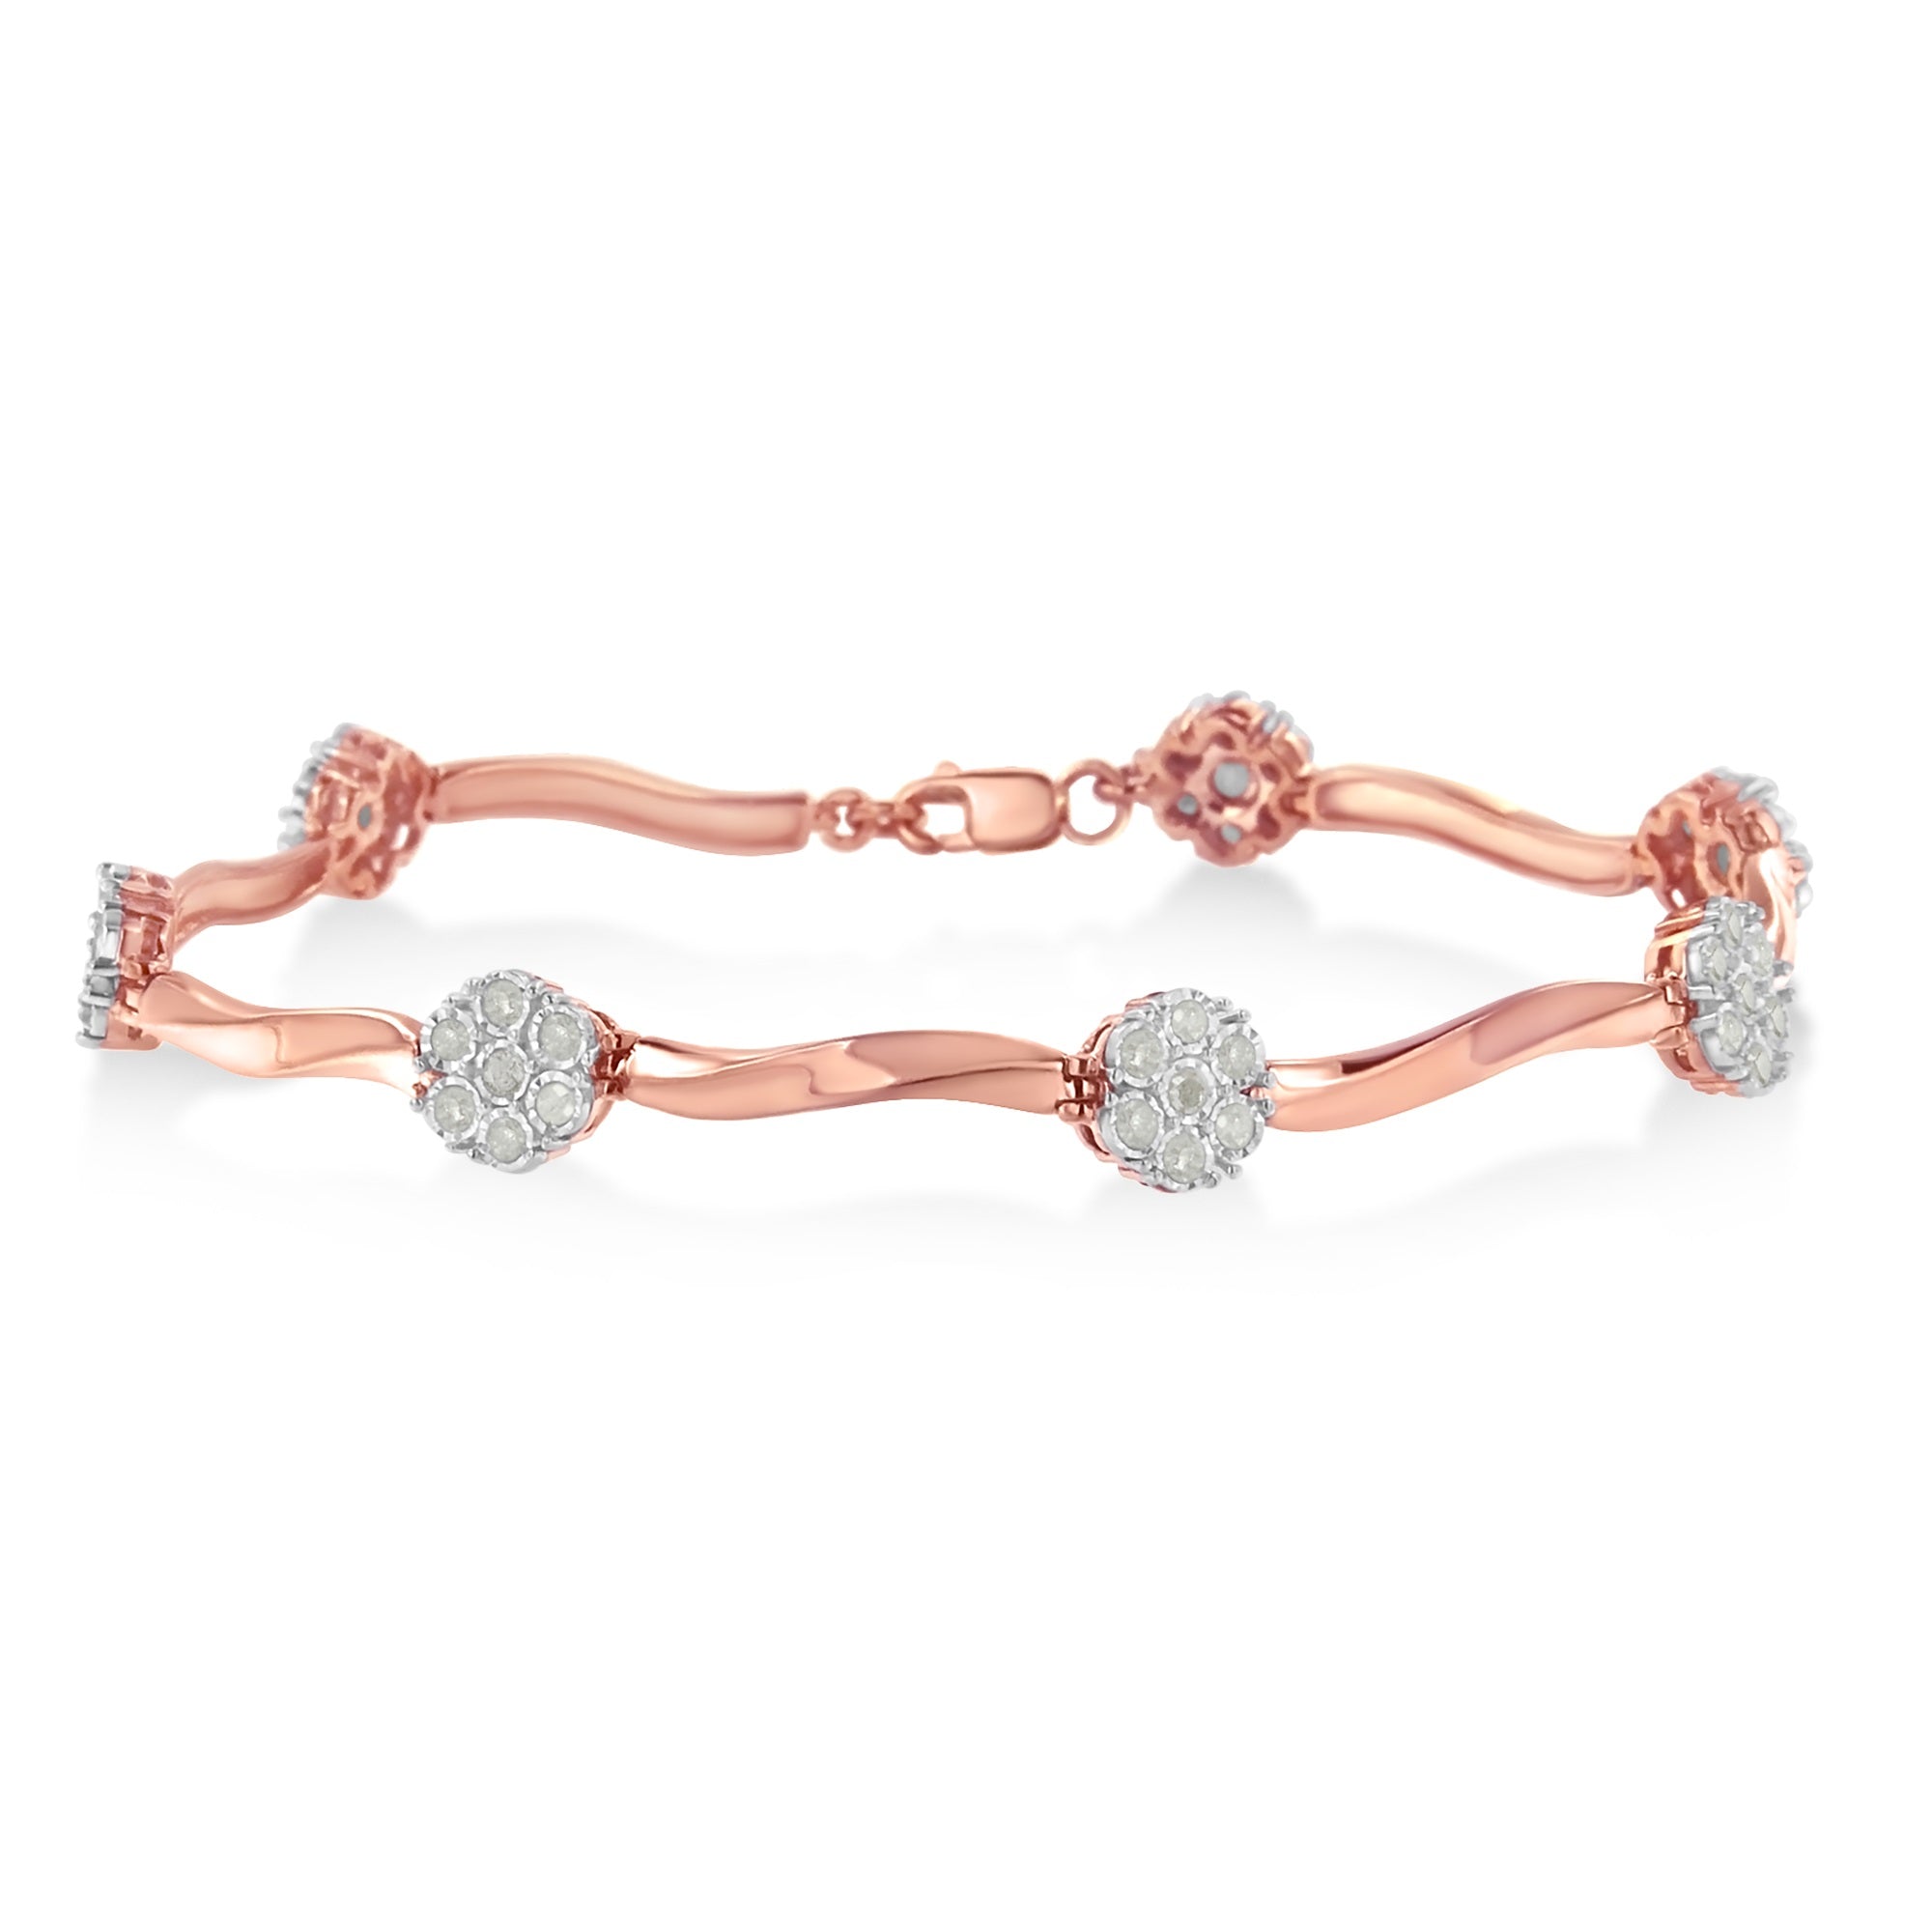 .925-10K-Rose-Gold-Over-Sterling-Silver-1.0-Cttw-Diamond-Floral-Link-Bracelet-(I-J-Color,I3-Clarity)-Bracelets